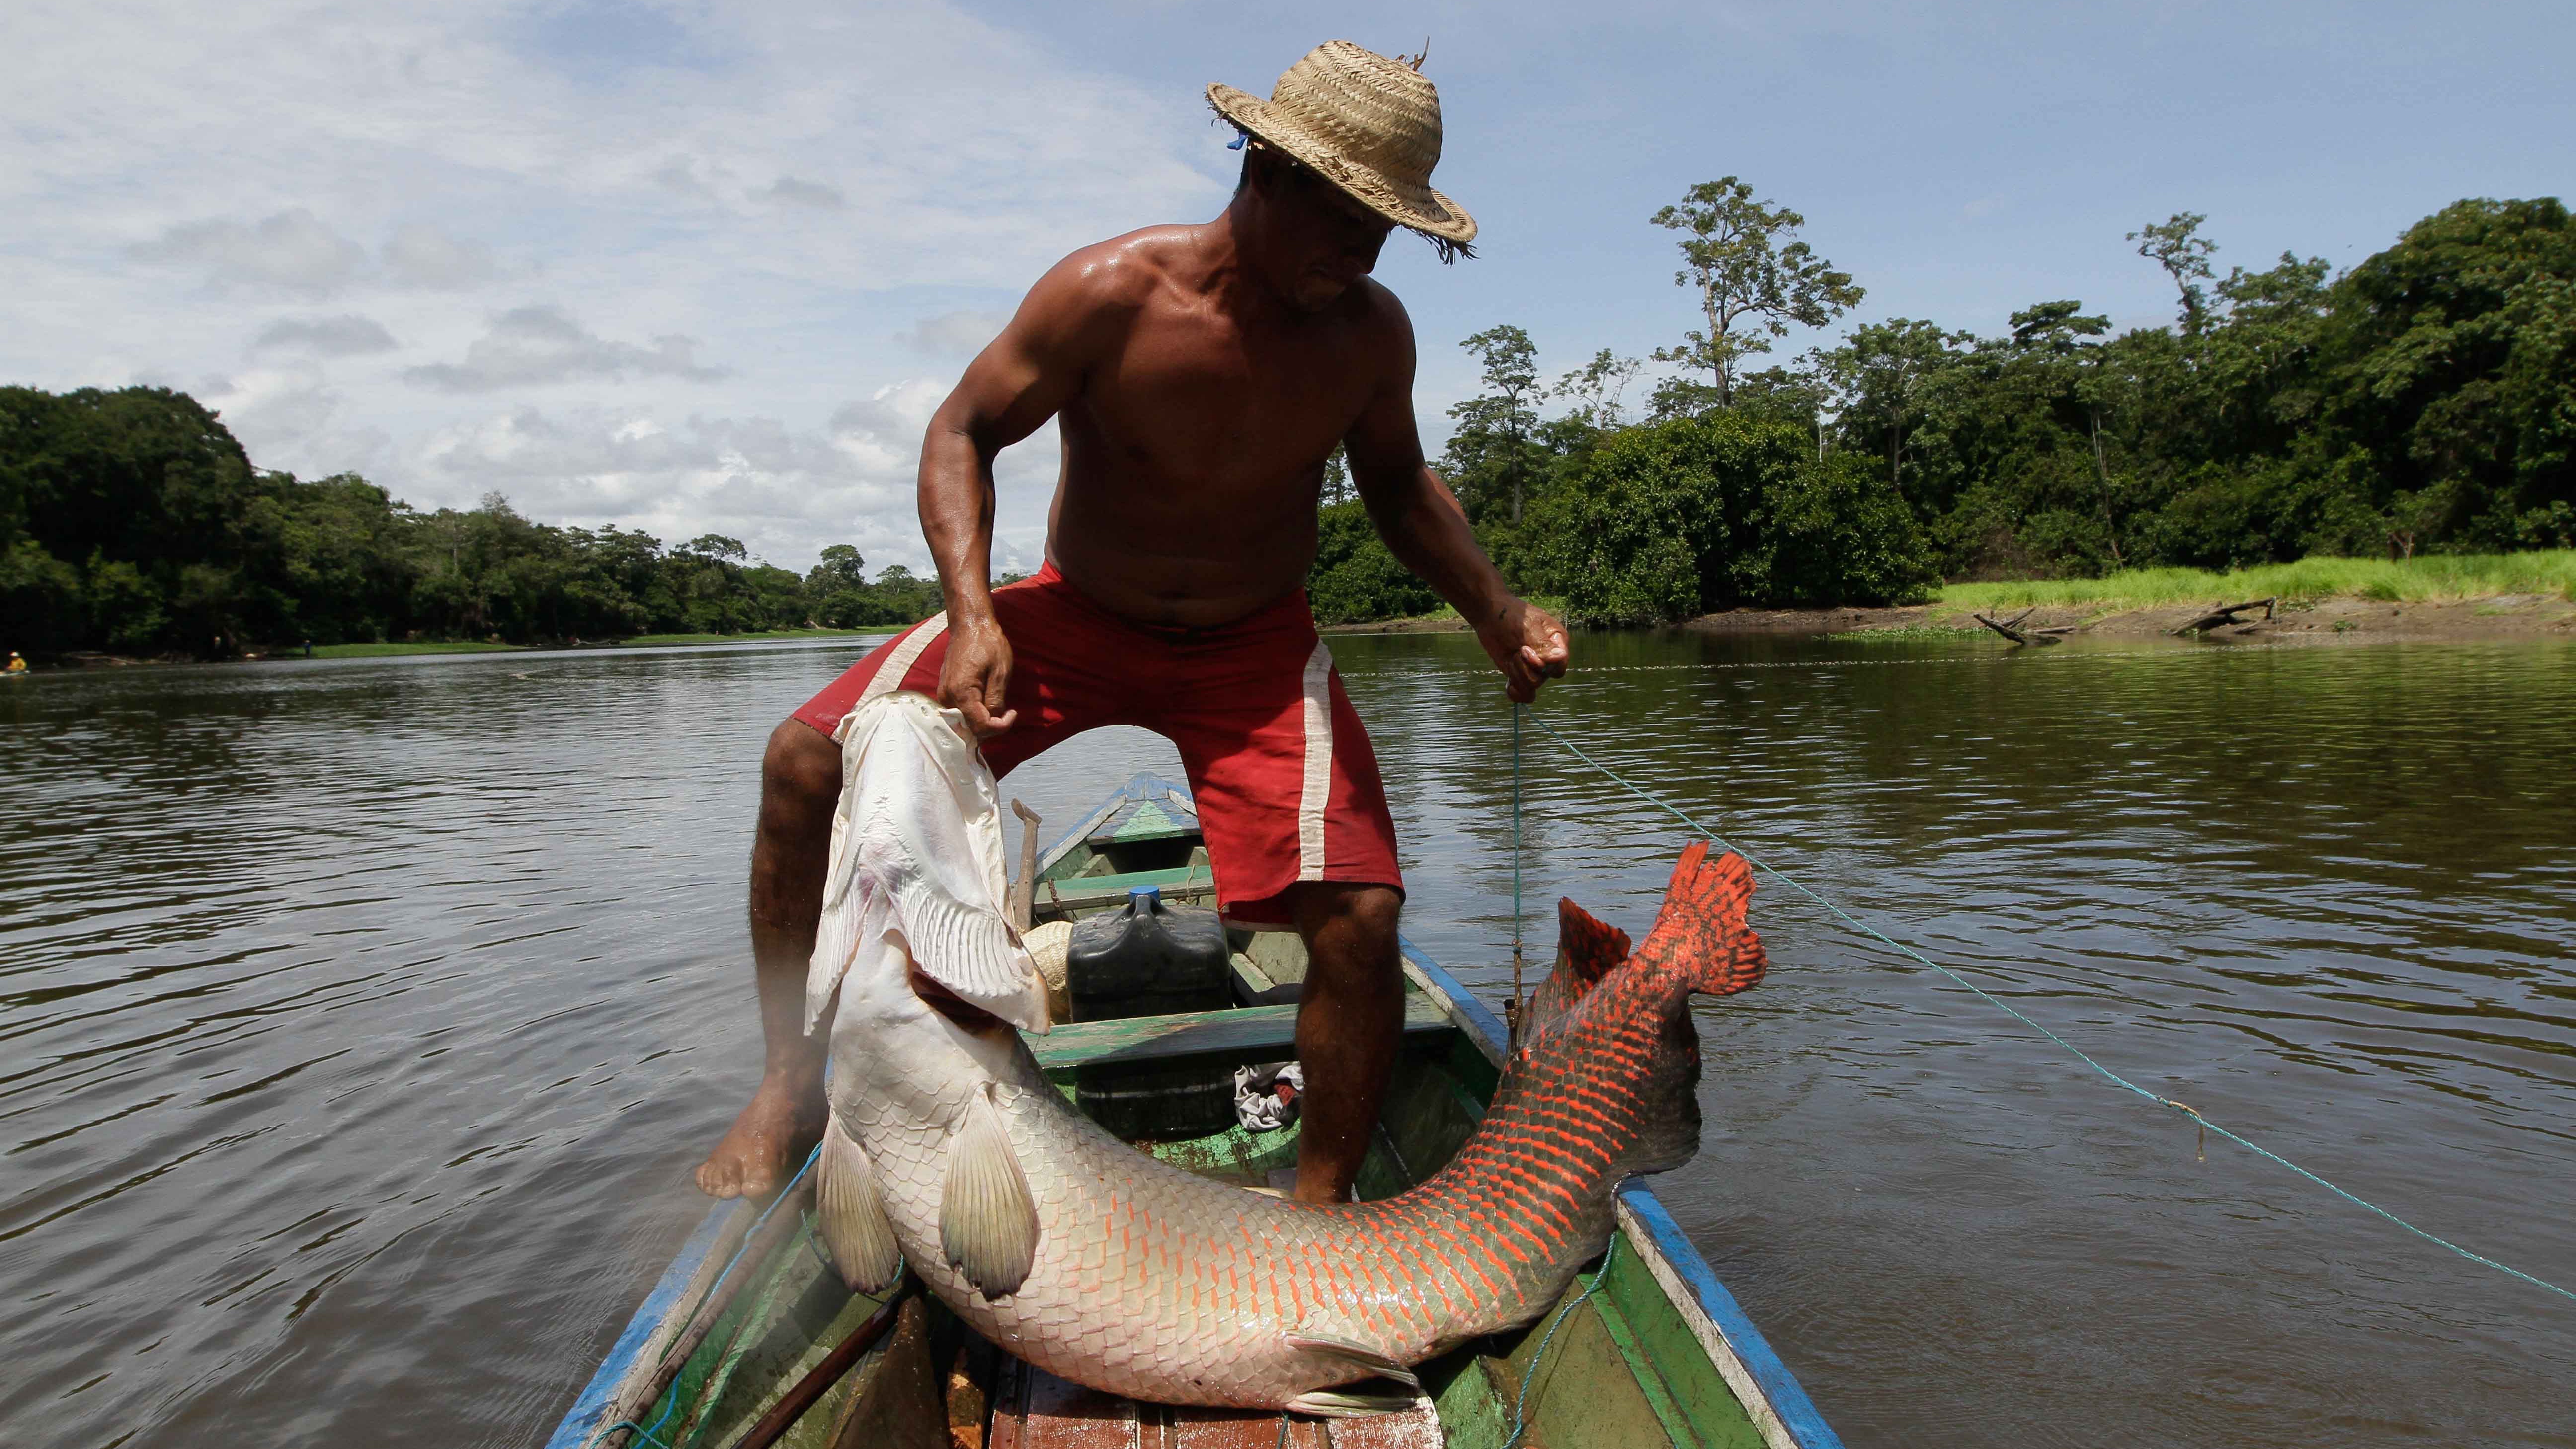 No Amazonas, CNI participa de evento que abre caminhos para a indicação geográfica para pirarucu de manejo